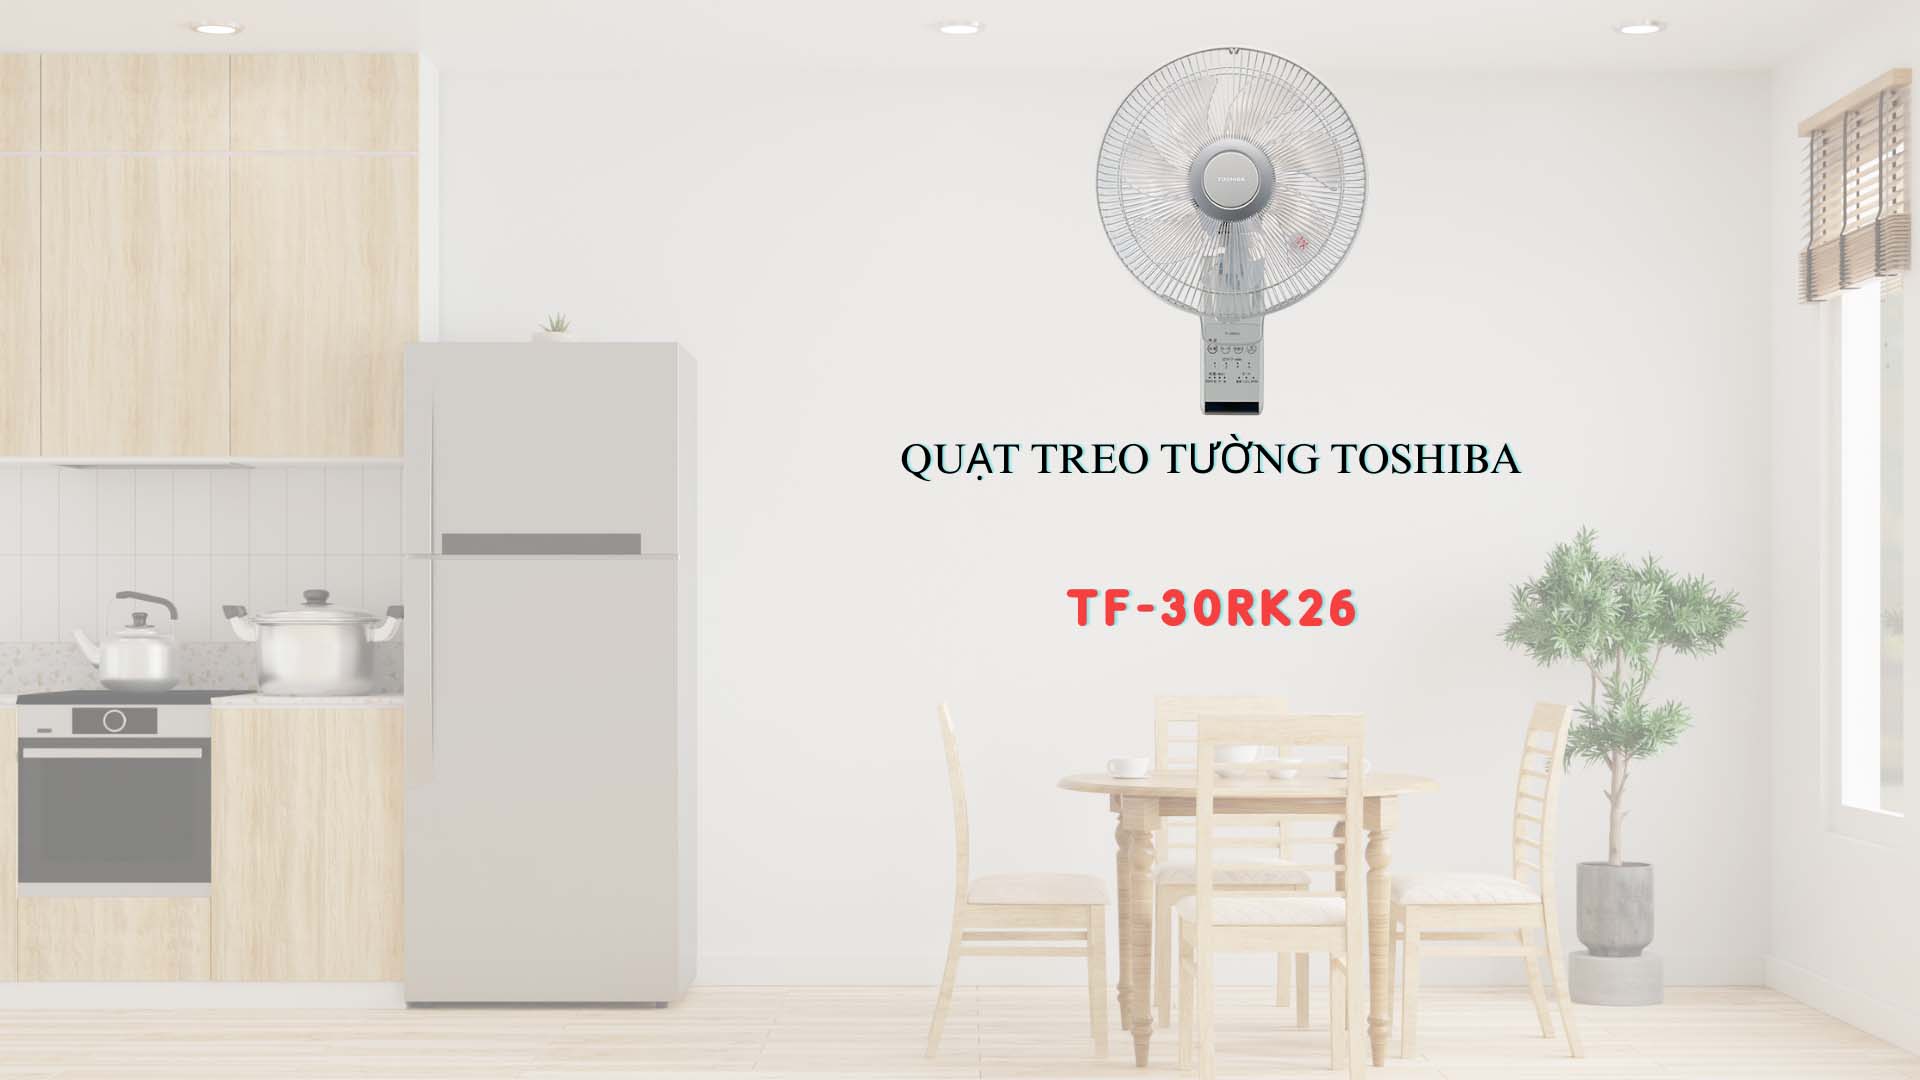 Quat-treo-tuong-Toshiba-TF-30RK26